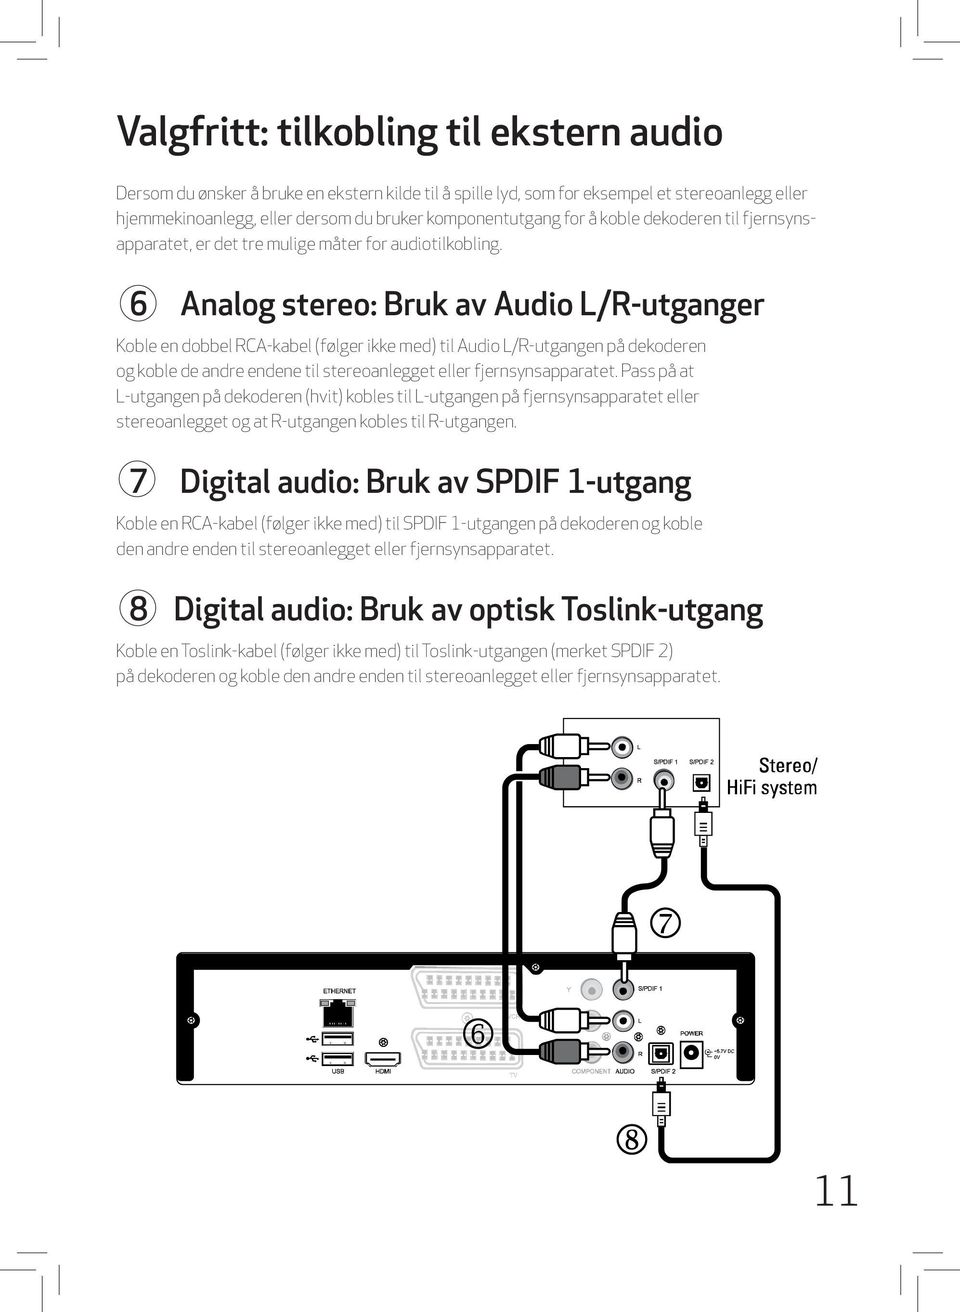 6 Analog stereo: Bruk av Audio L/R-utganger Koble en dobbel RCA-kabel (følger ikke med) til Audio L/R-utgangen på dekoderen og koble de andre endene til stereoanlegget eller fjernsynsapparatet.